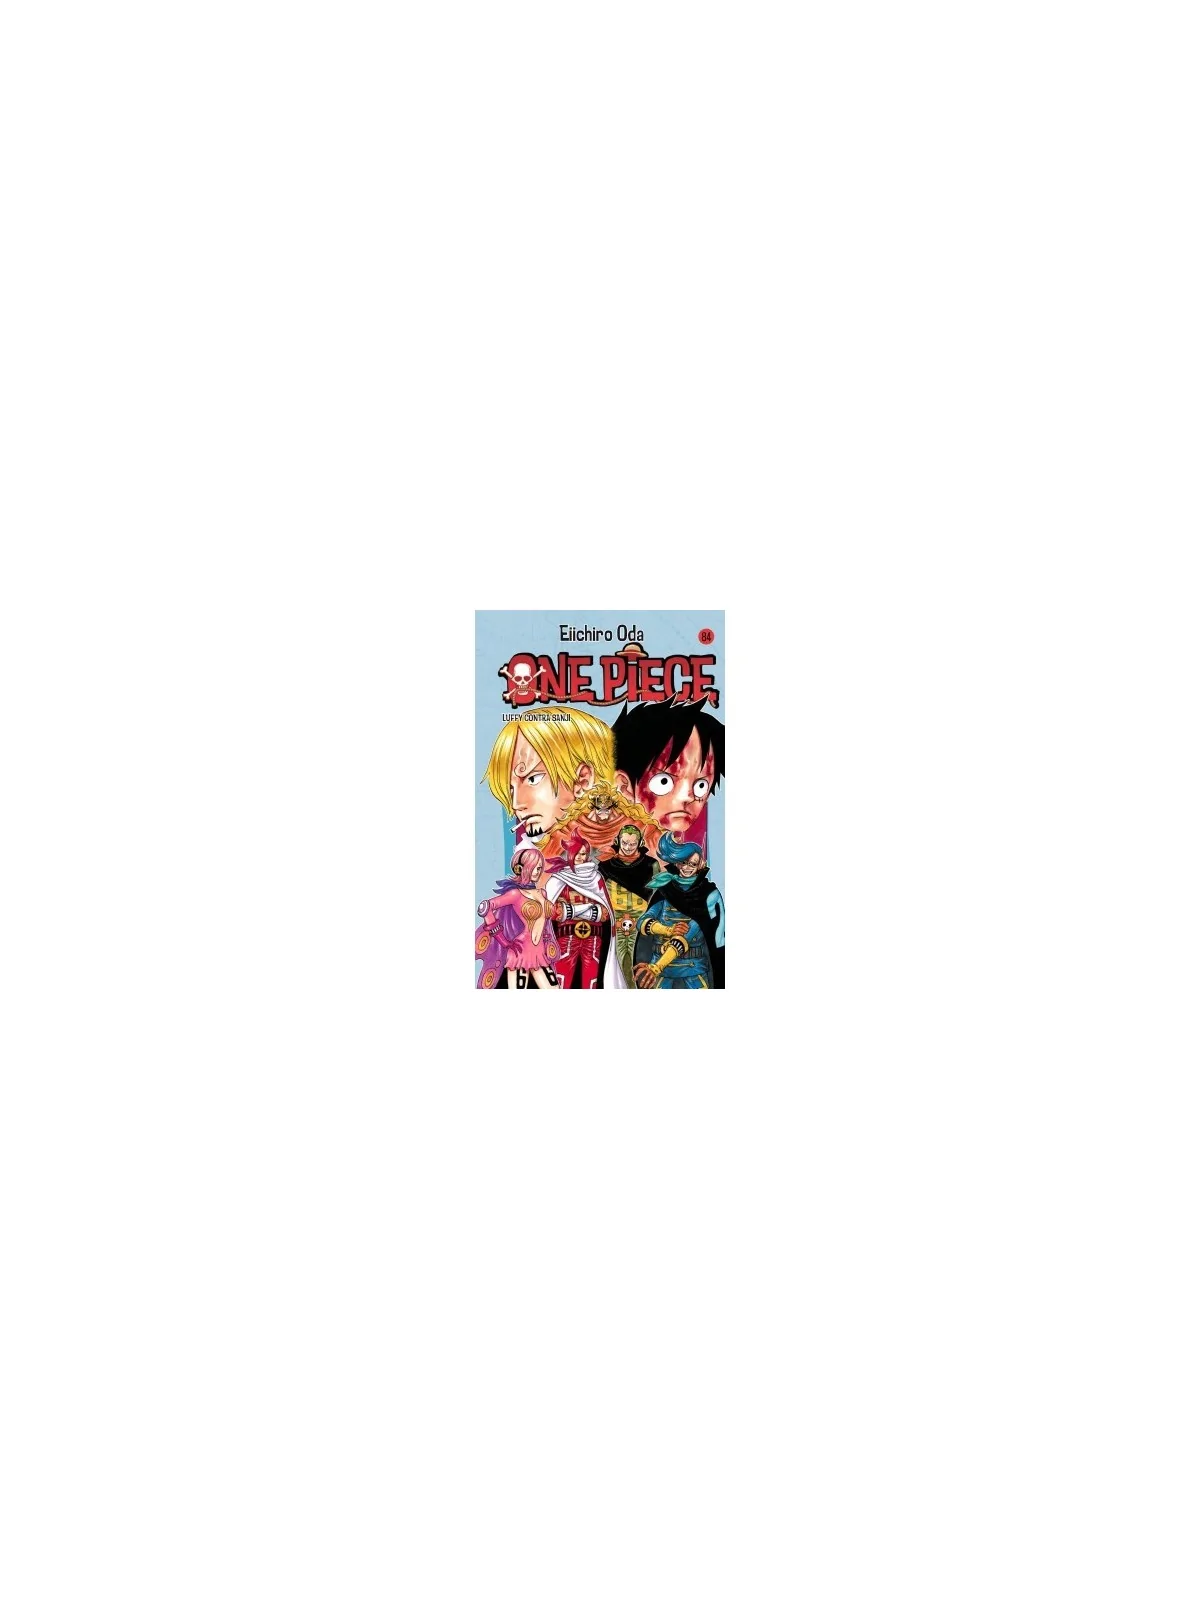 Comprar One Piece 084 barato al mejor precio 7,55 € de Planeta Comic